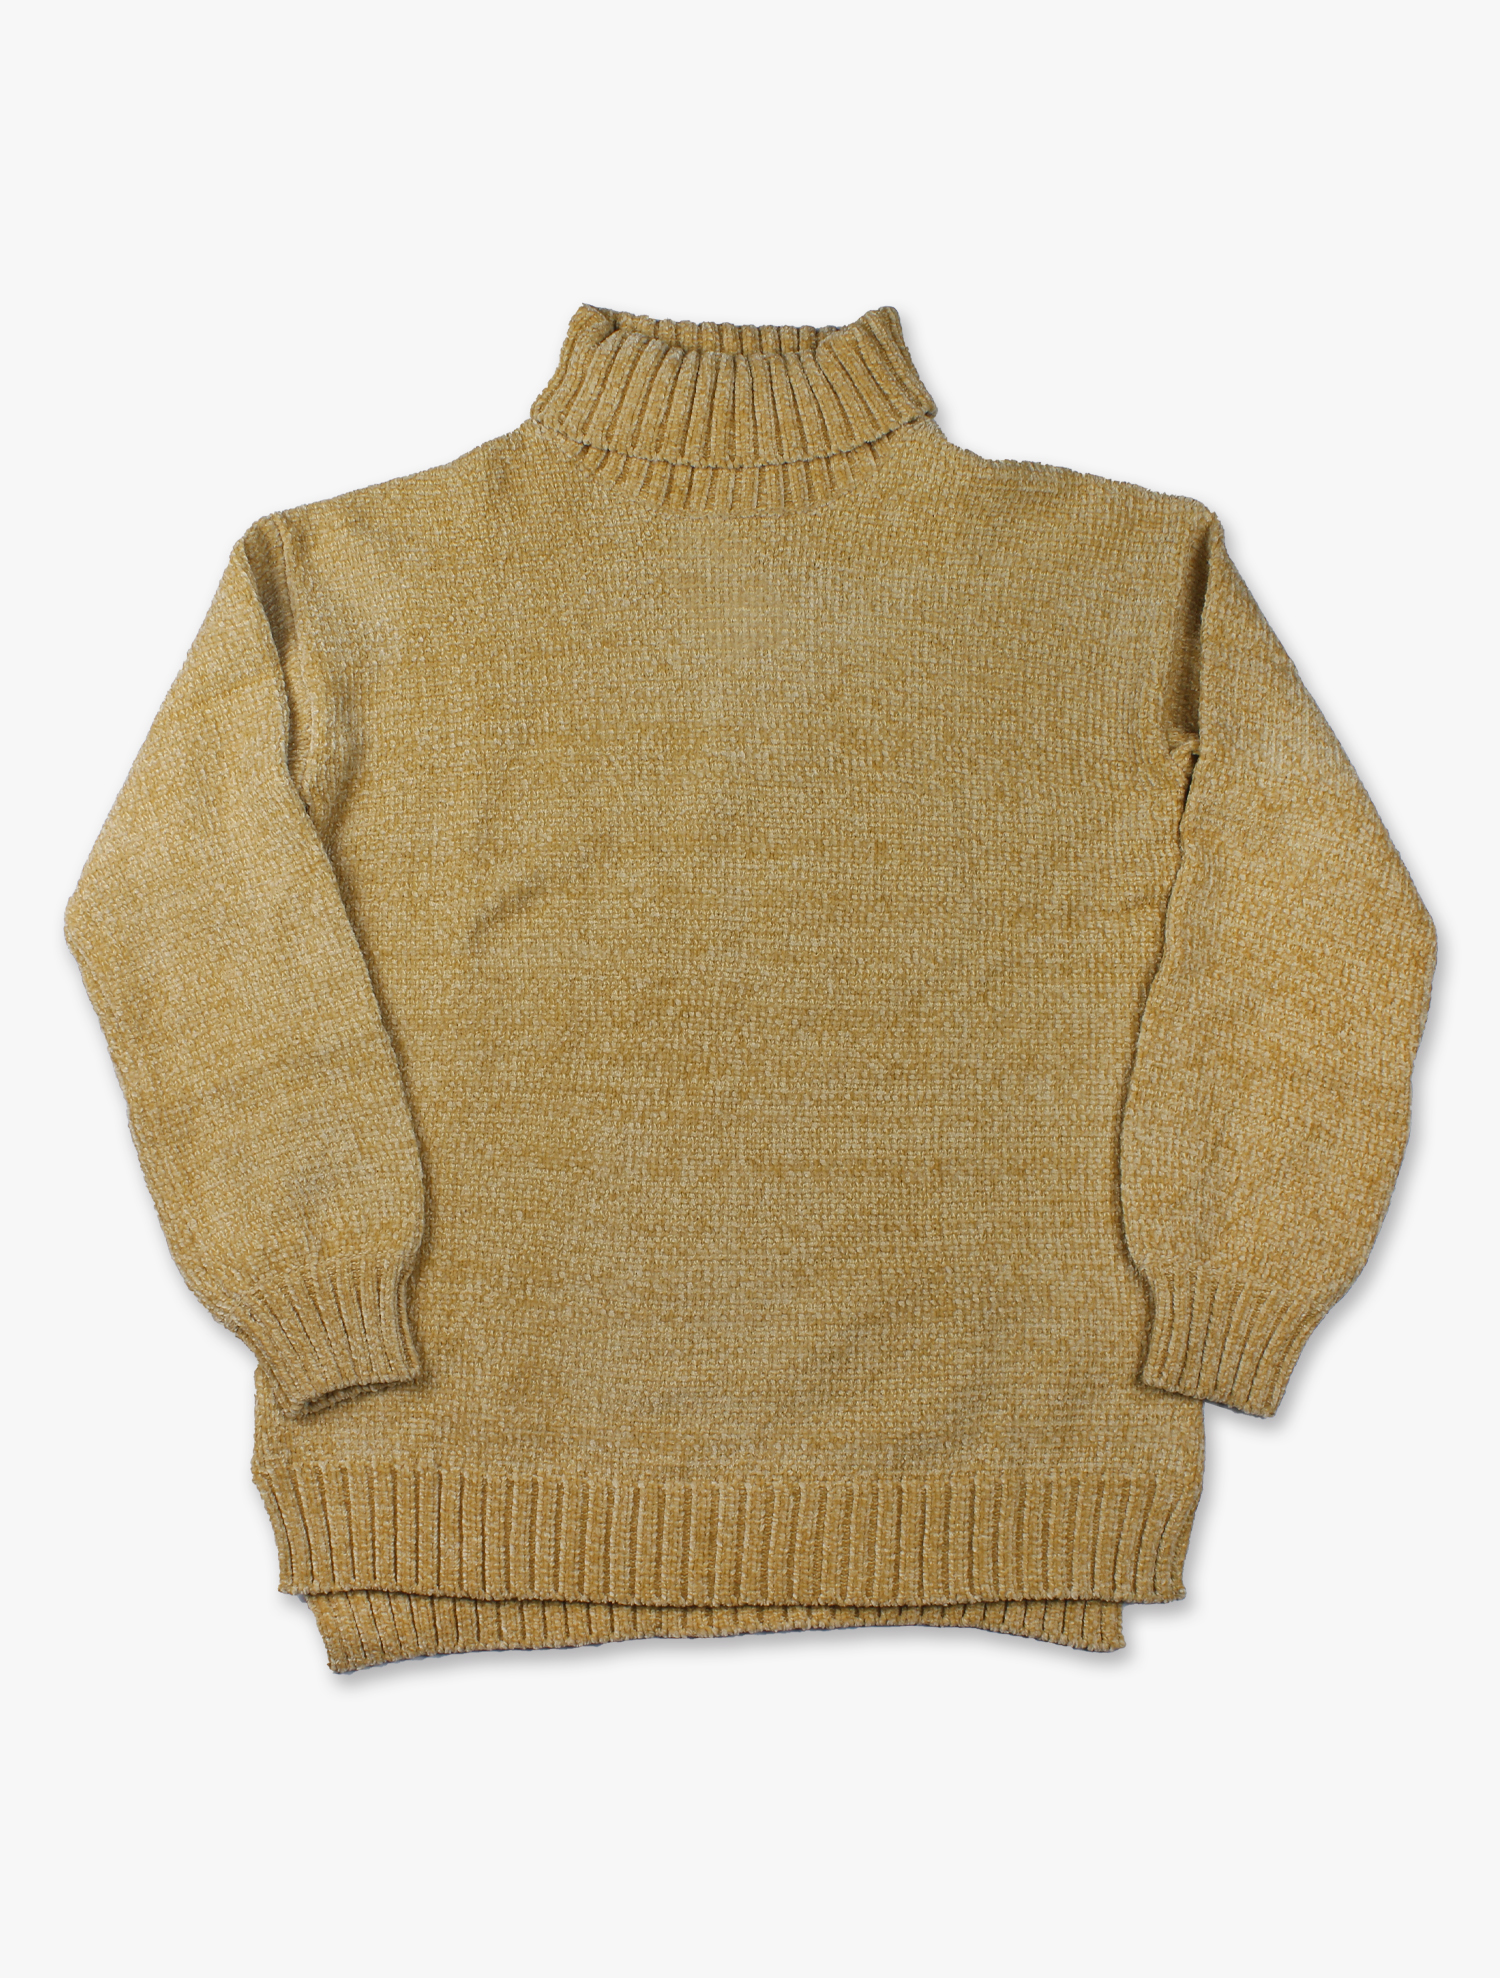 Sweater con Gola Subida